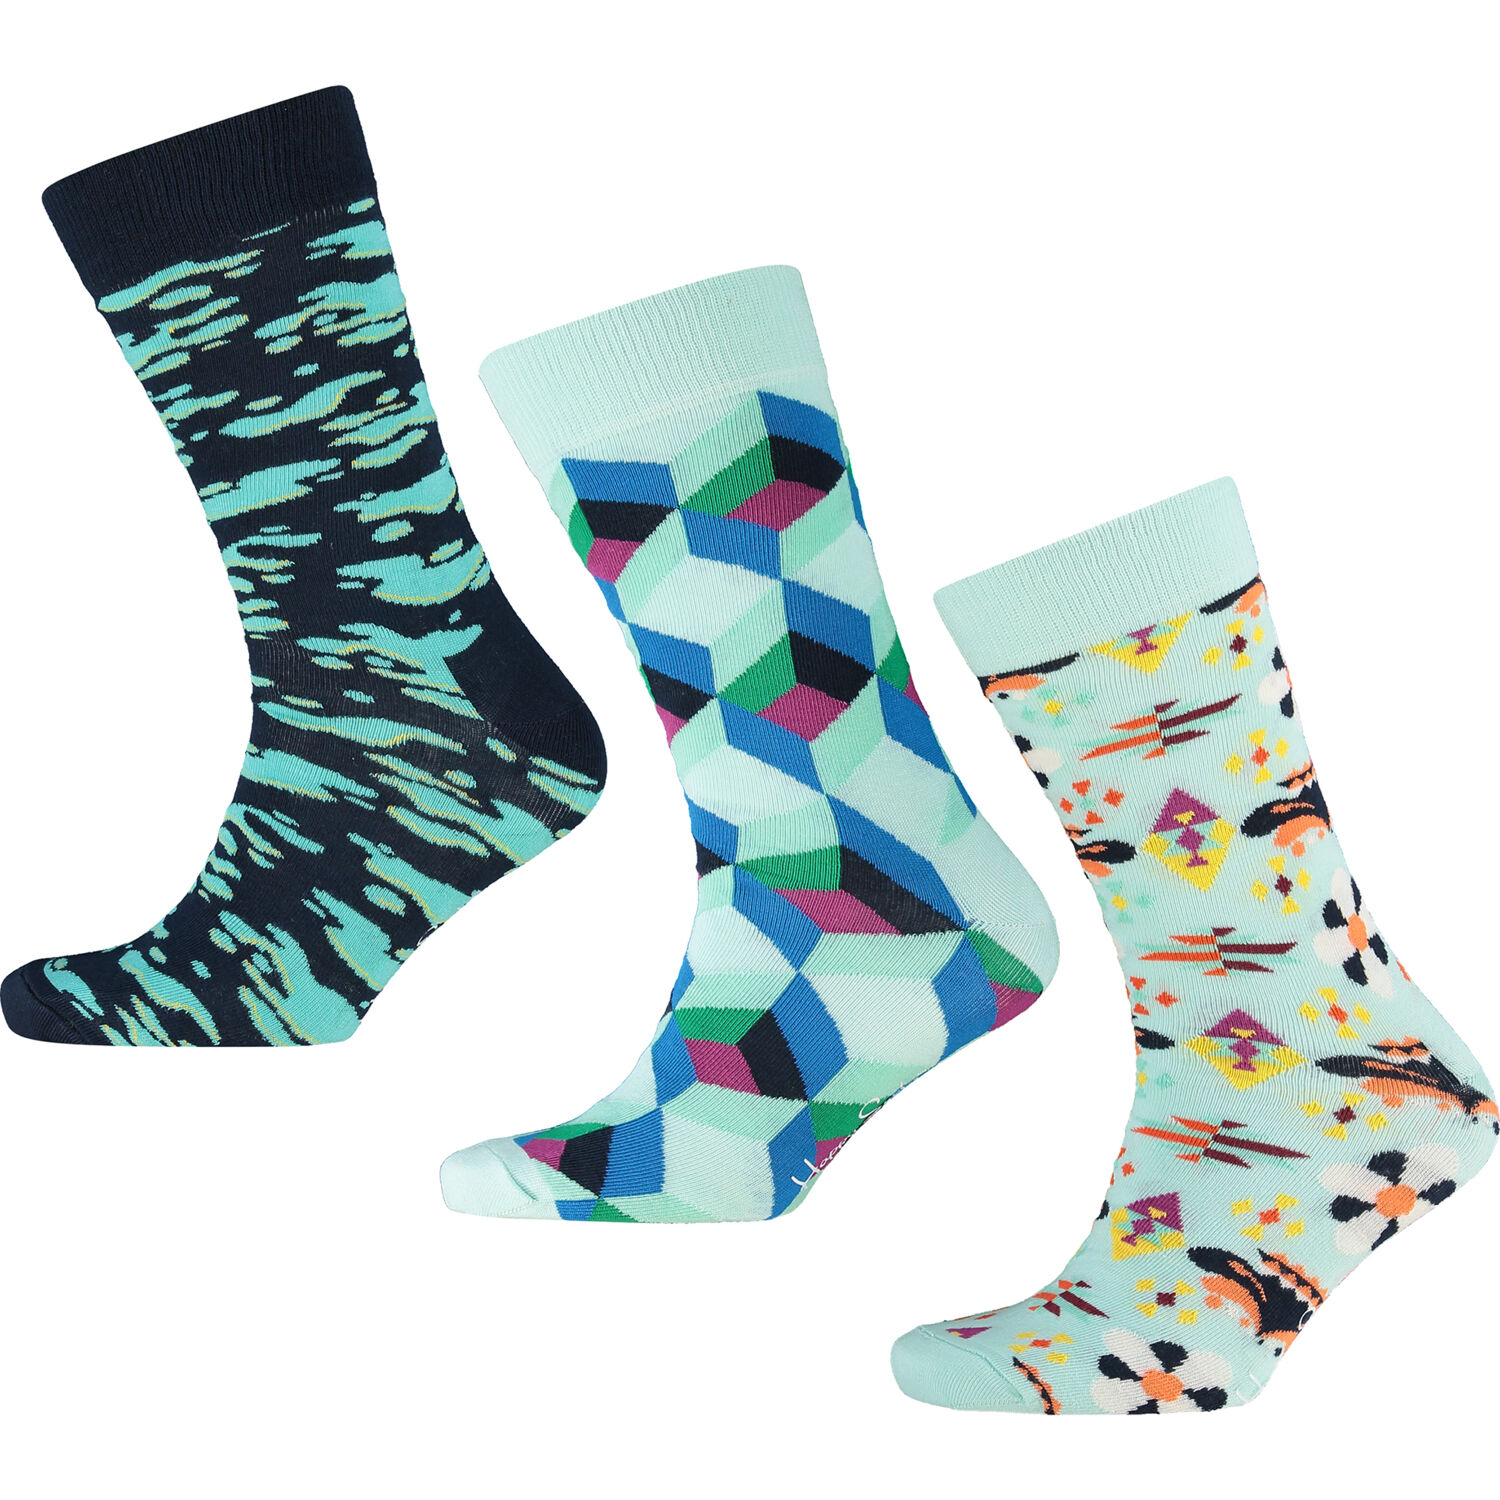 3 pairs of Happy Socks £7.99 @ Tk Maxx 